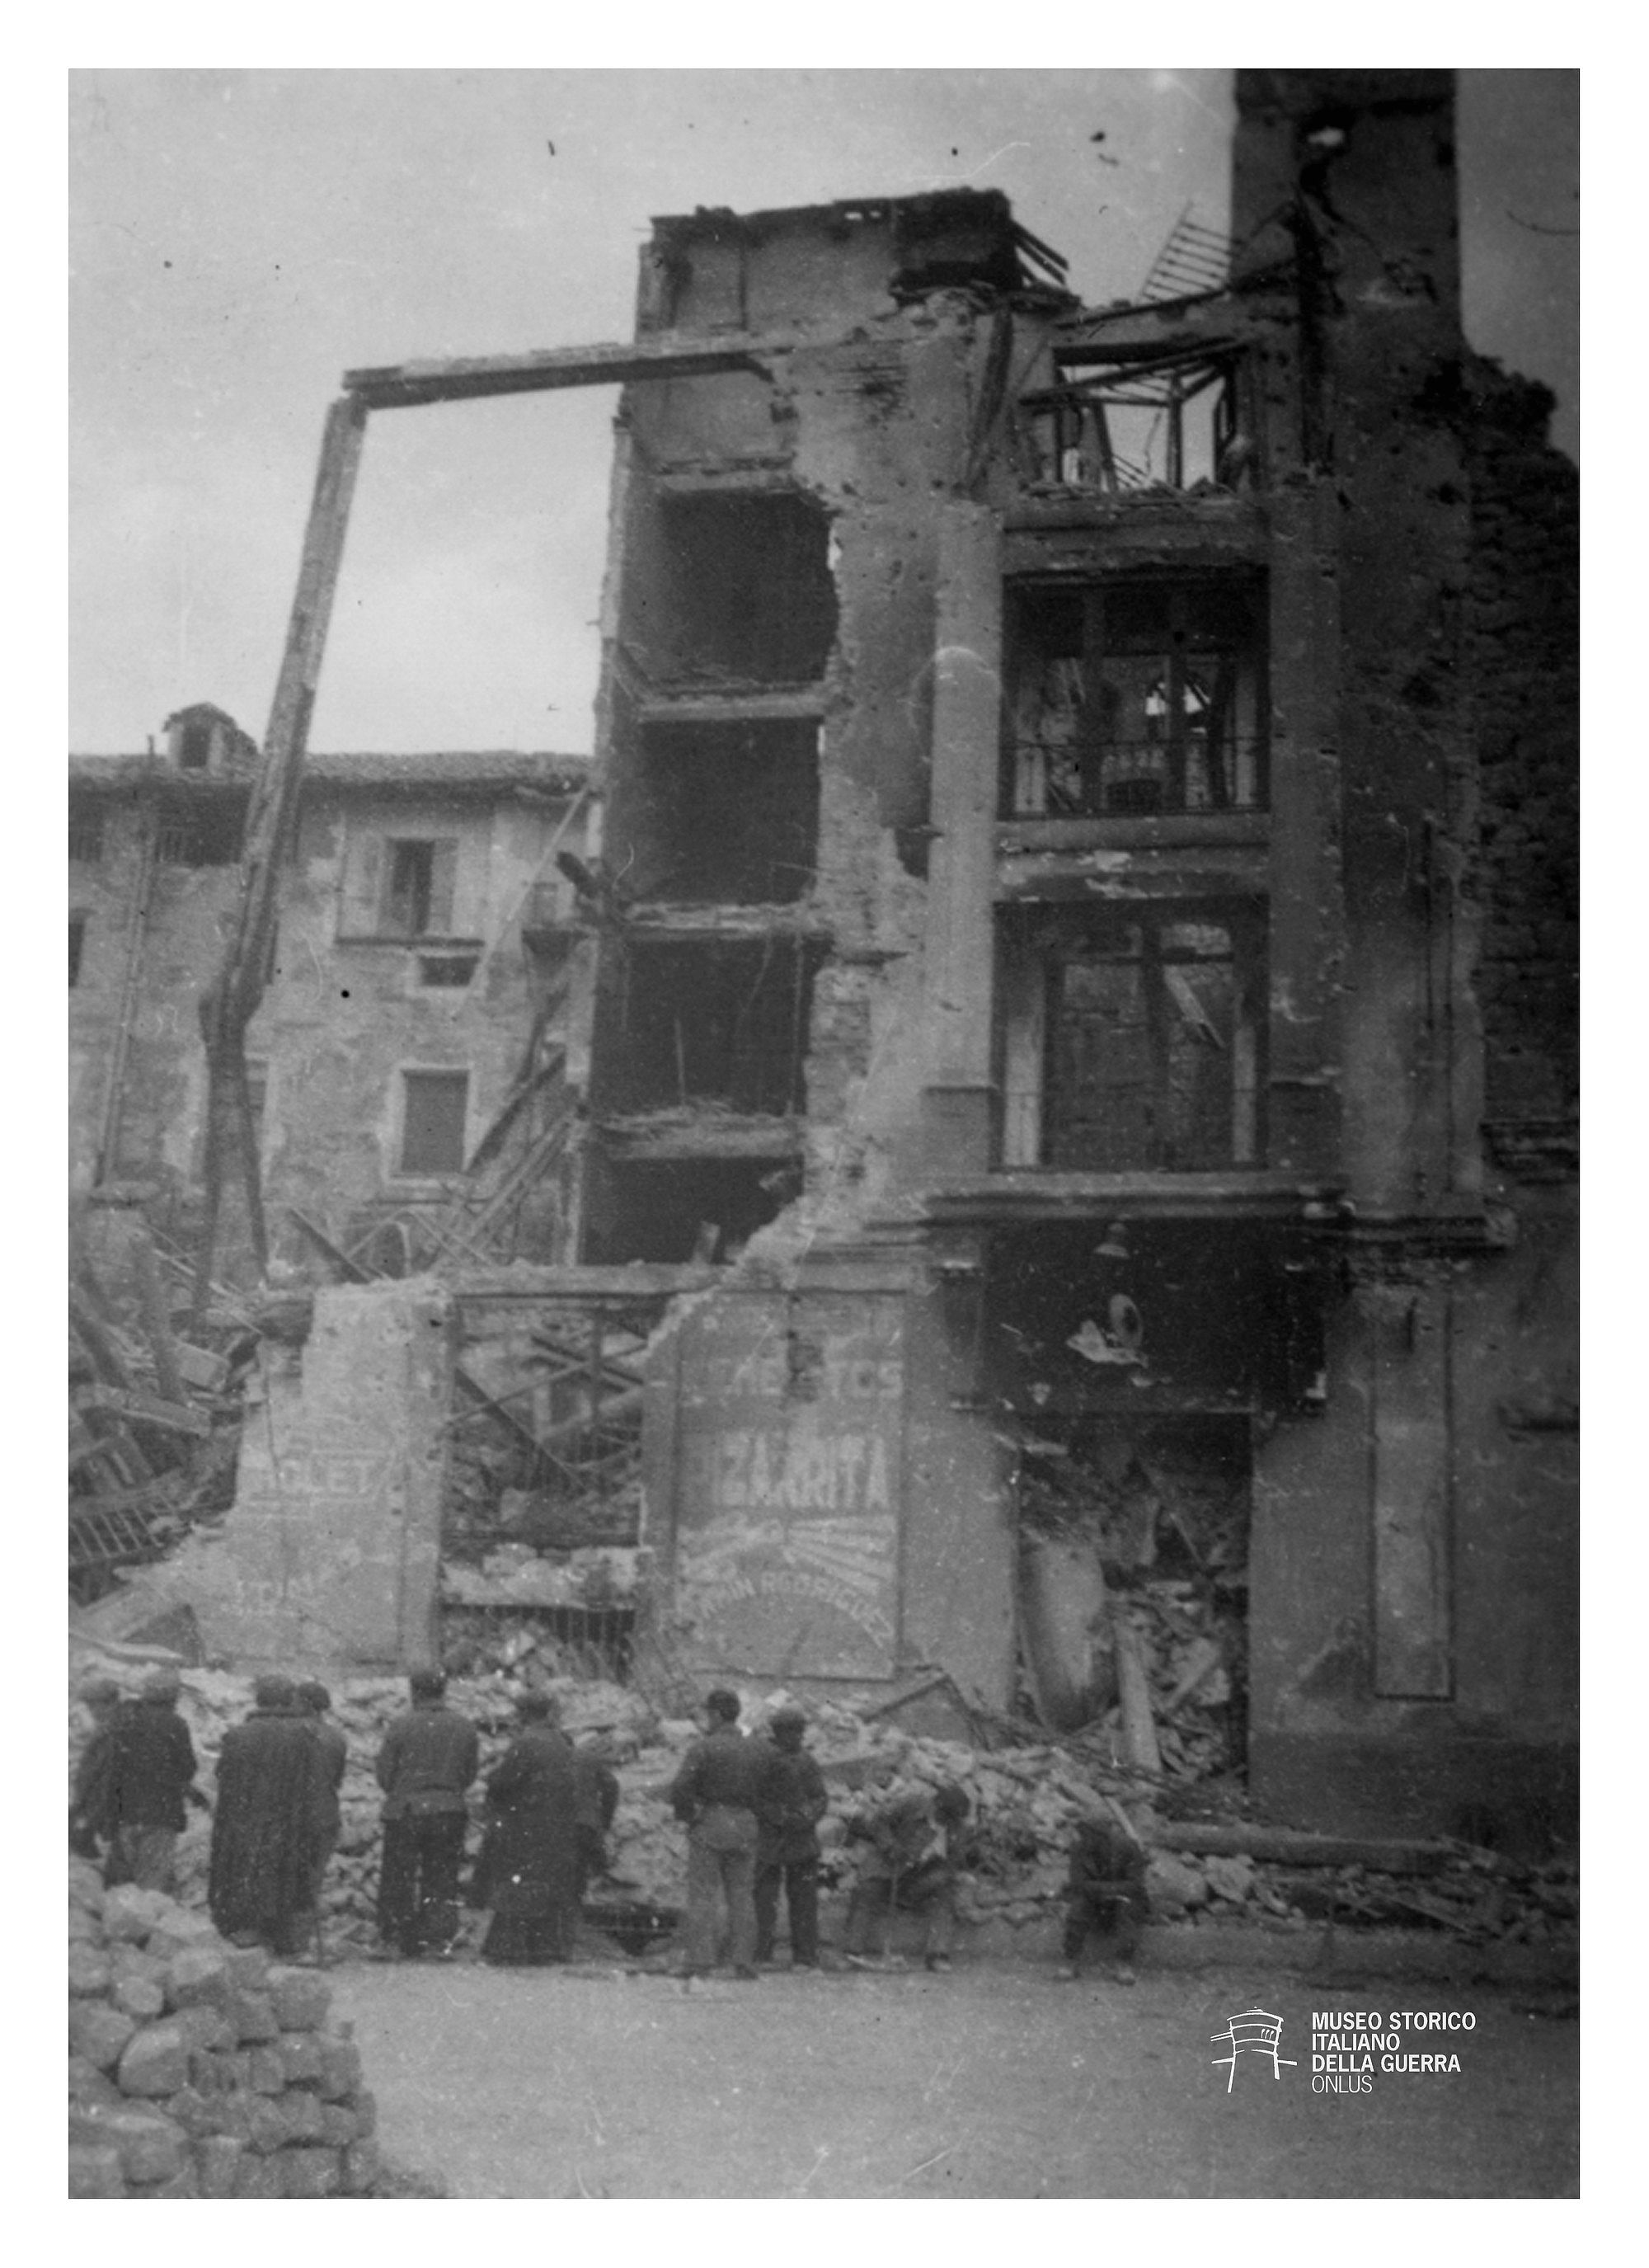 Edifici bombardati in una città spagnola, presumibilmente tra il 1936 e il 1938 [Fondo Carlo Chiasera, Archivio MSIG 246/381]